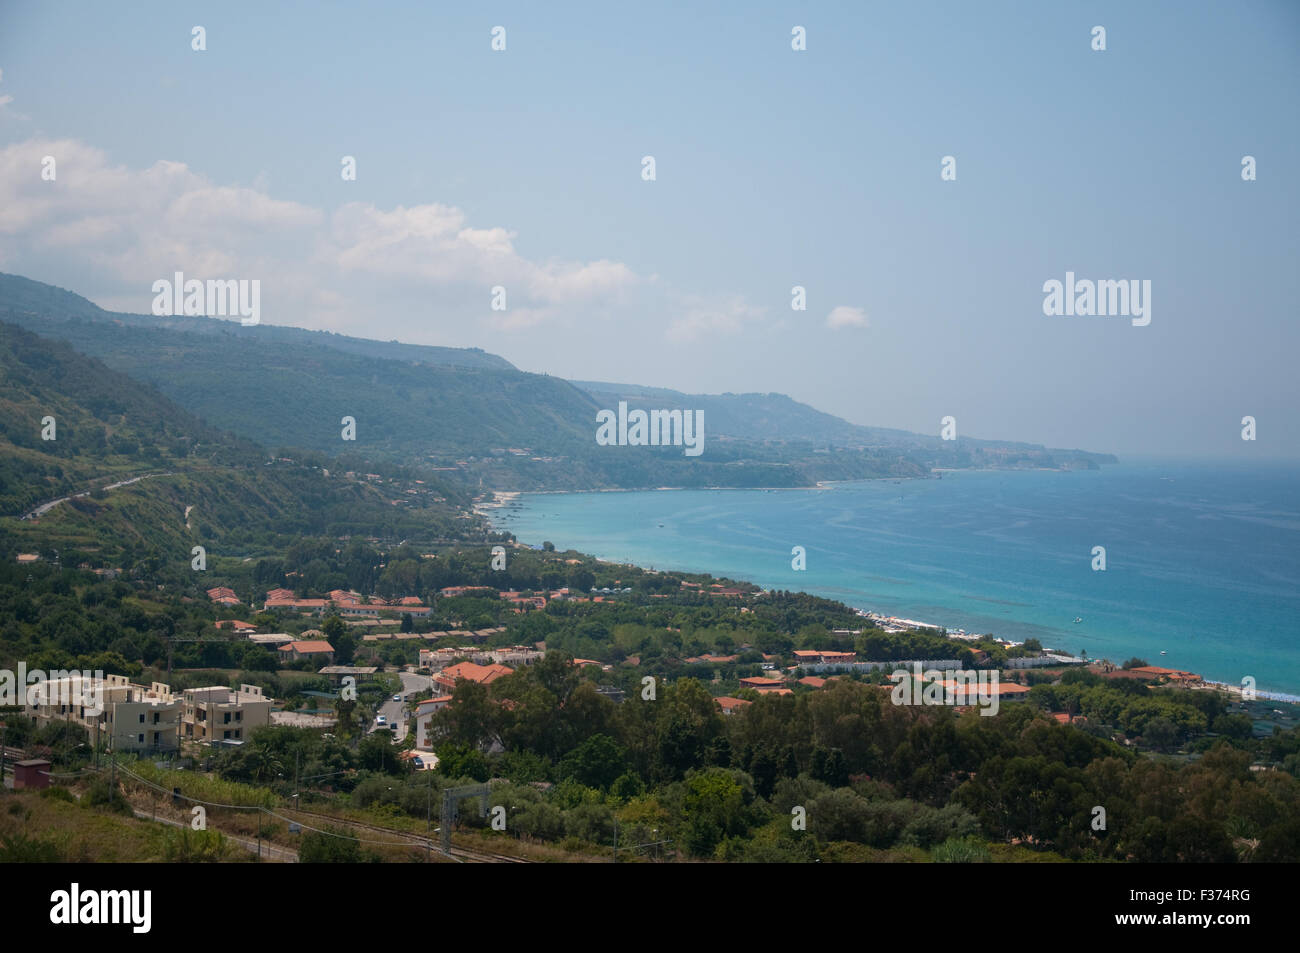 View of the marina of Nicotera, Calabria, Italy Stock Photo